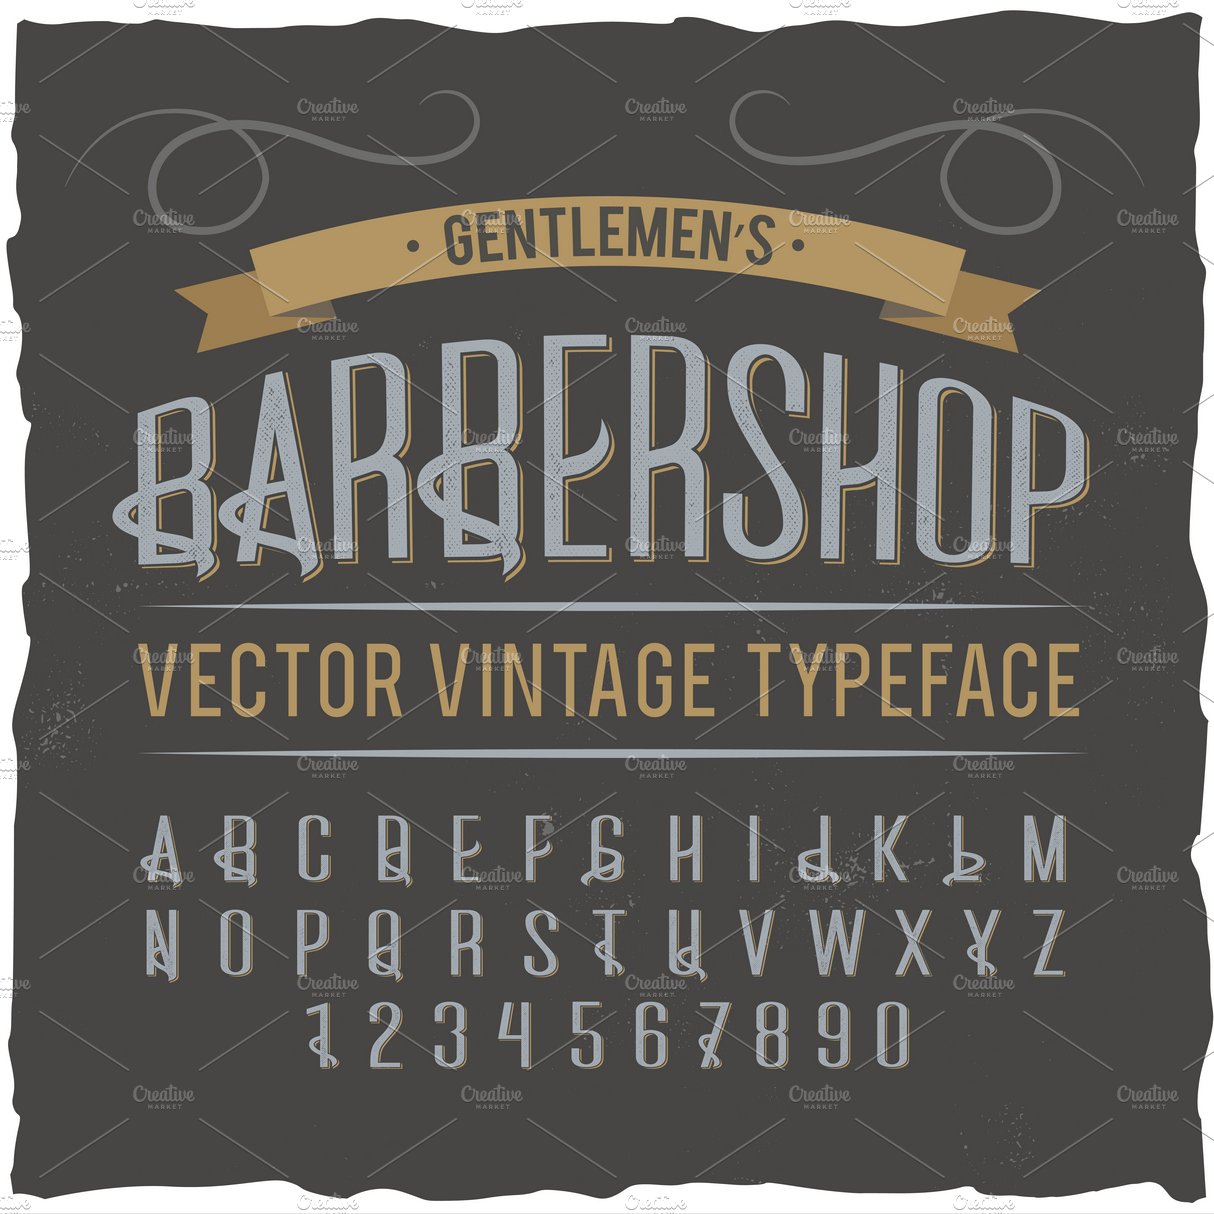 Vintage label typeface Barber preview image.